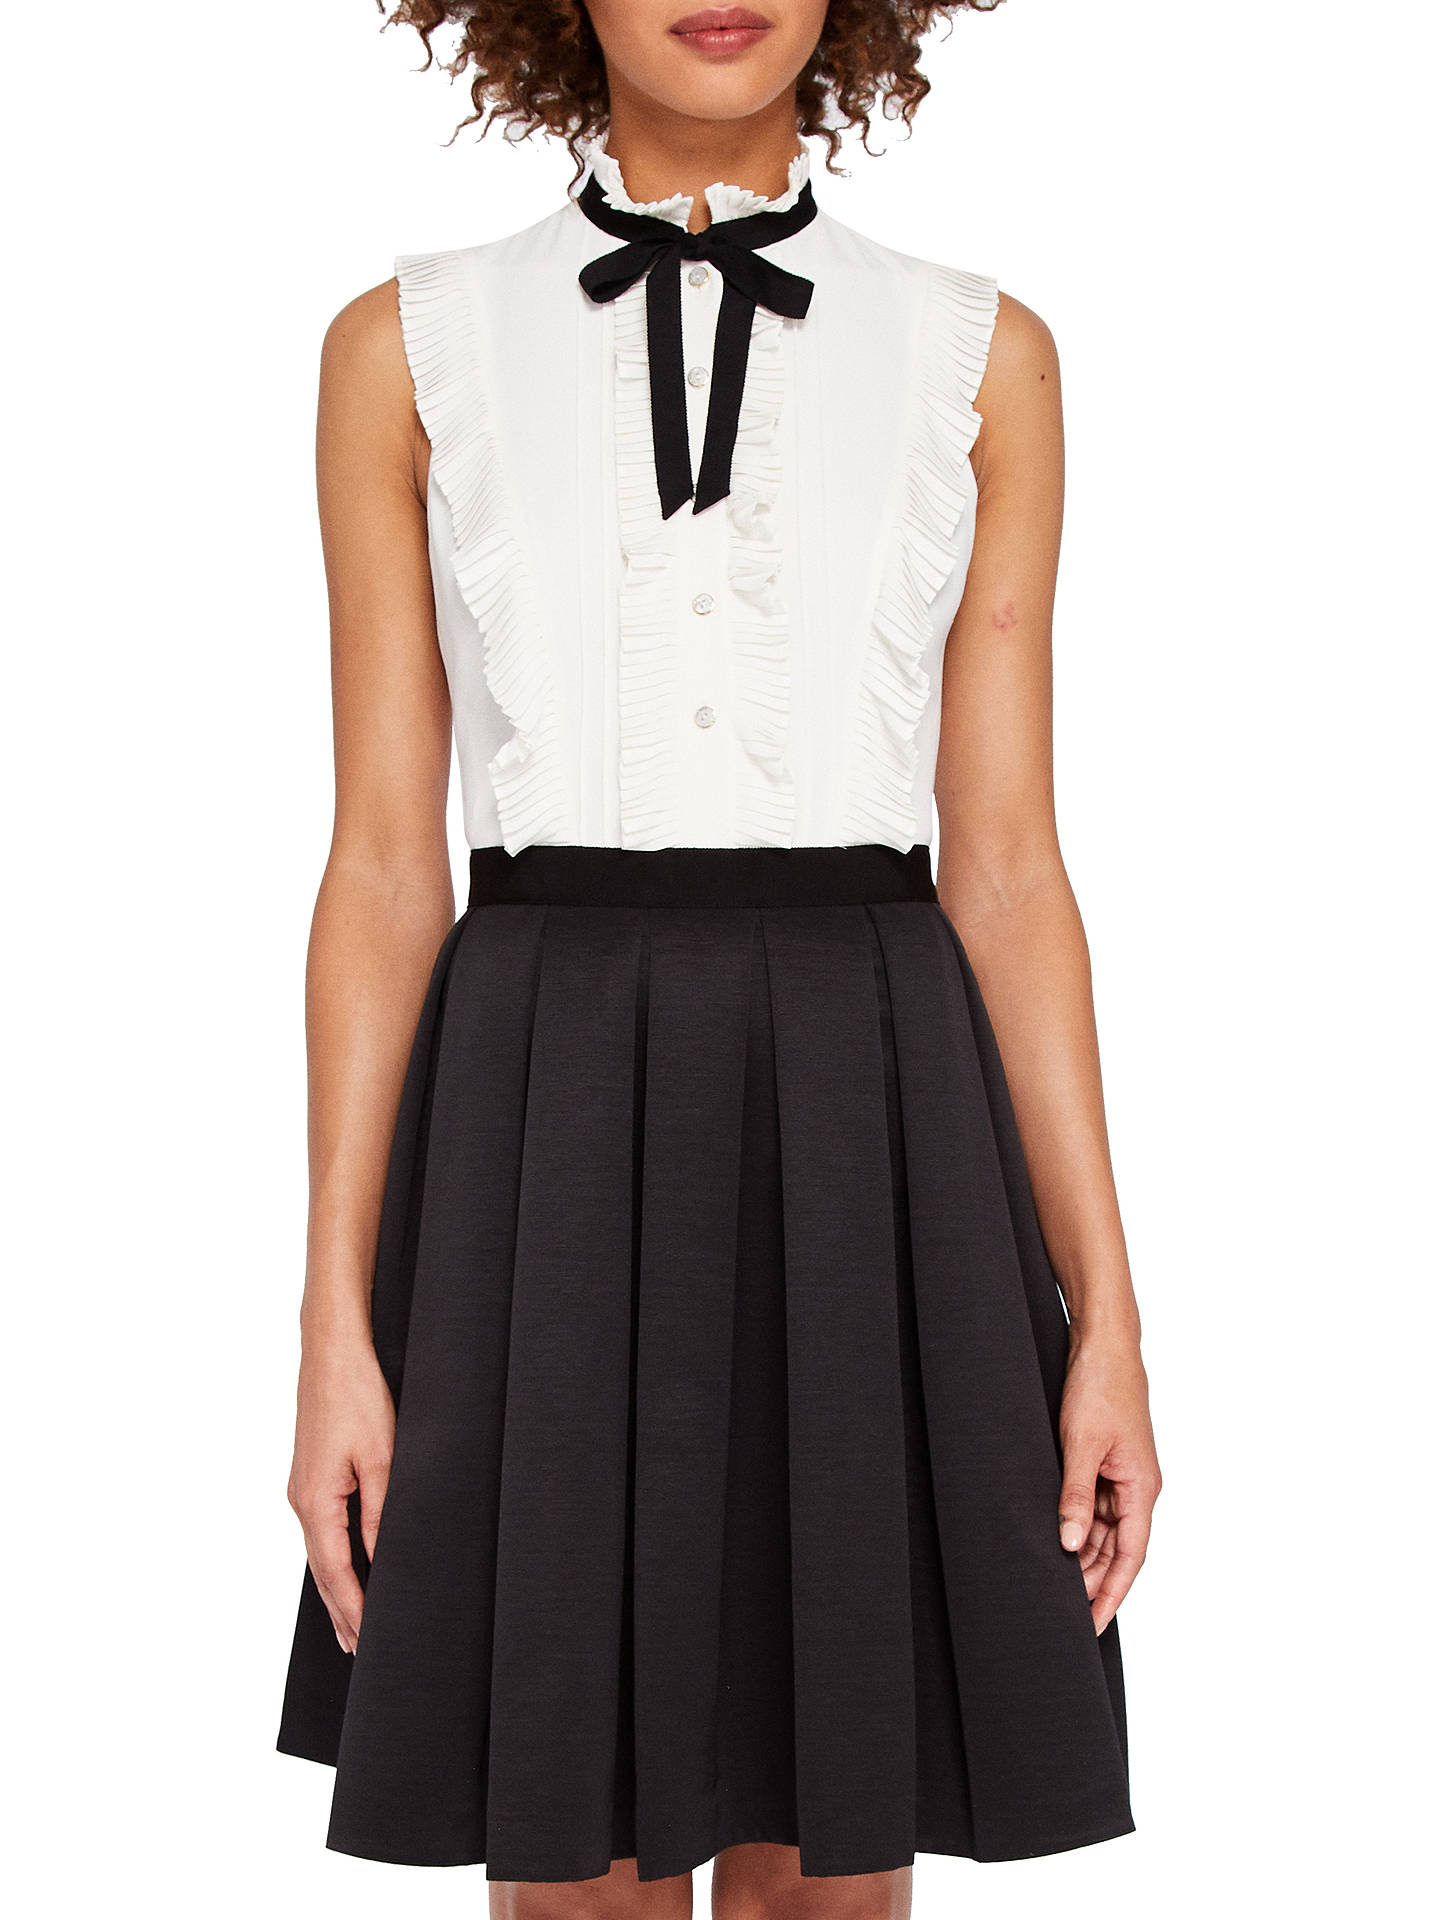 White sleeveless blouse black tie dresses best sleeveless dresses for women size dresses